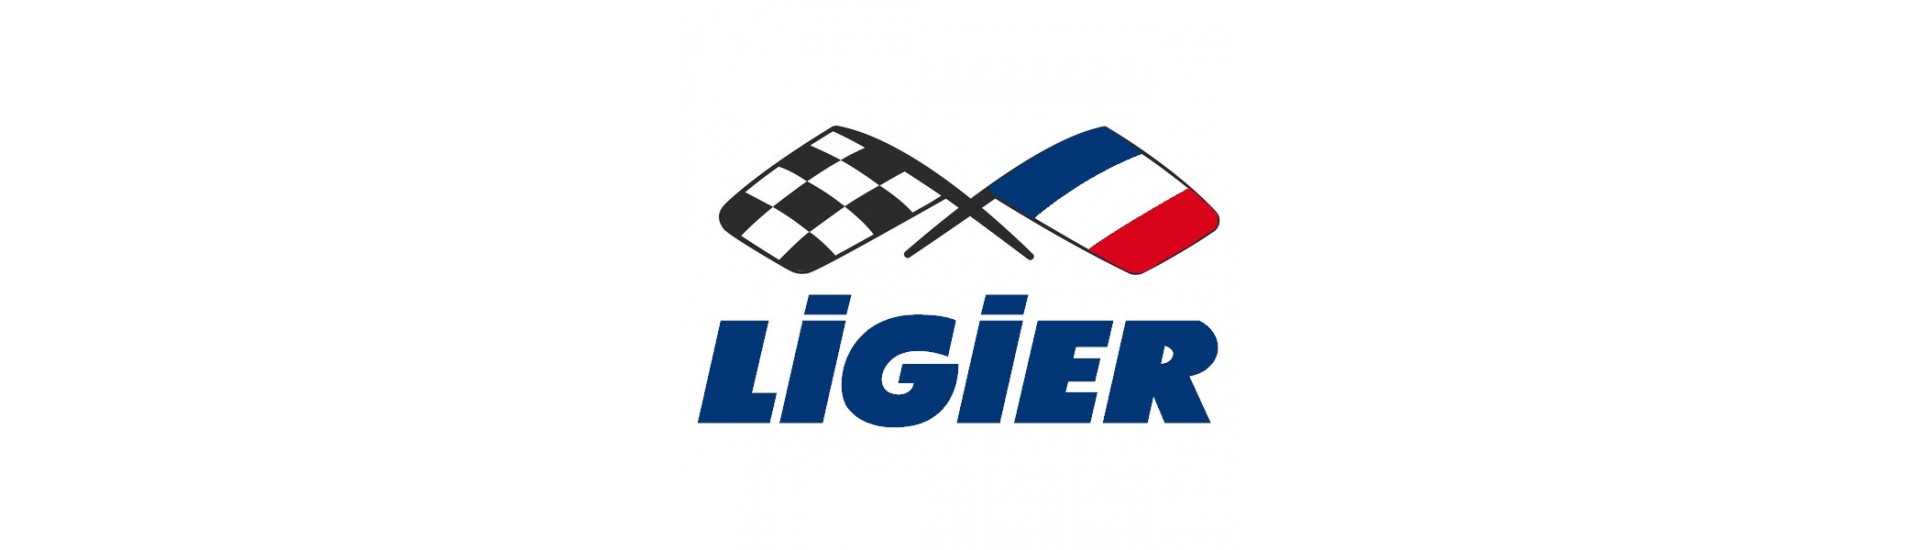 Kit de întreținere la cel mai bun preț pentru o mașină fără permis Ligier